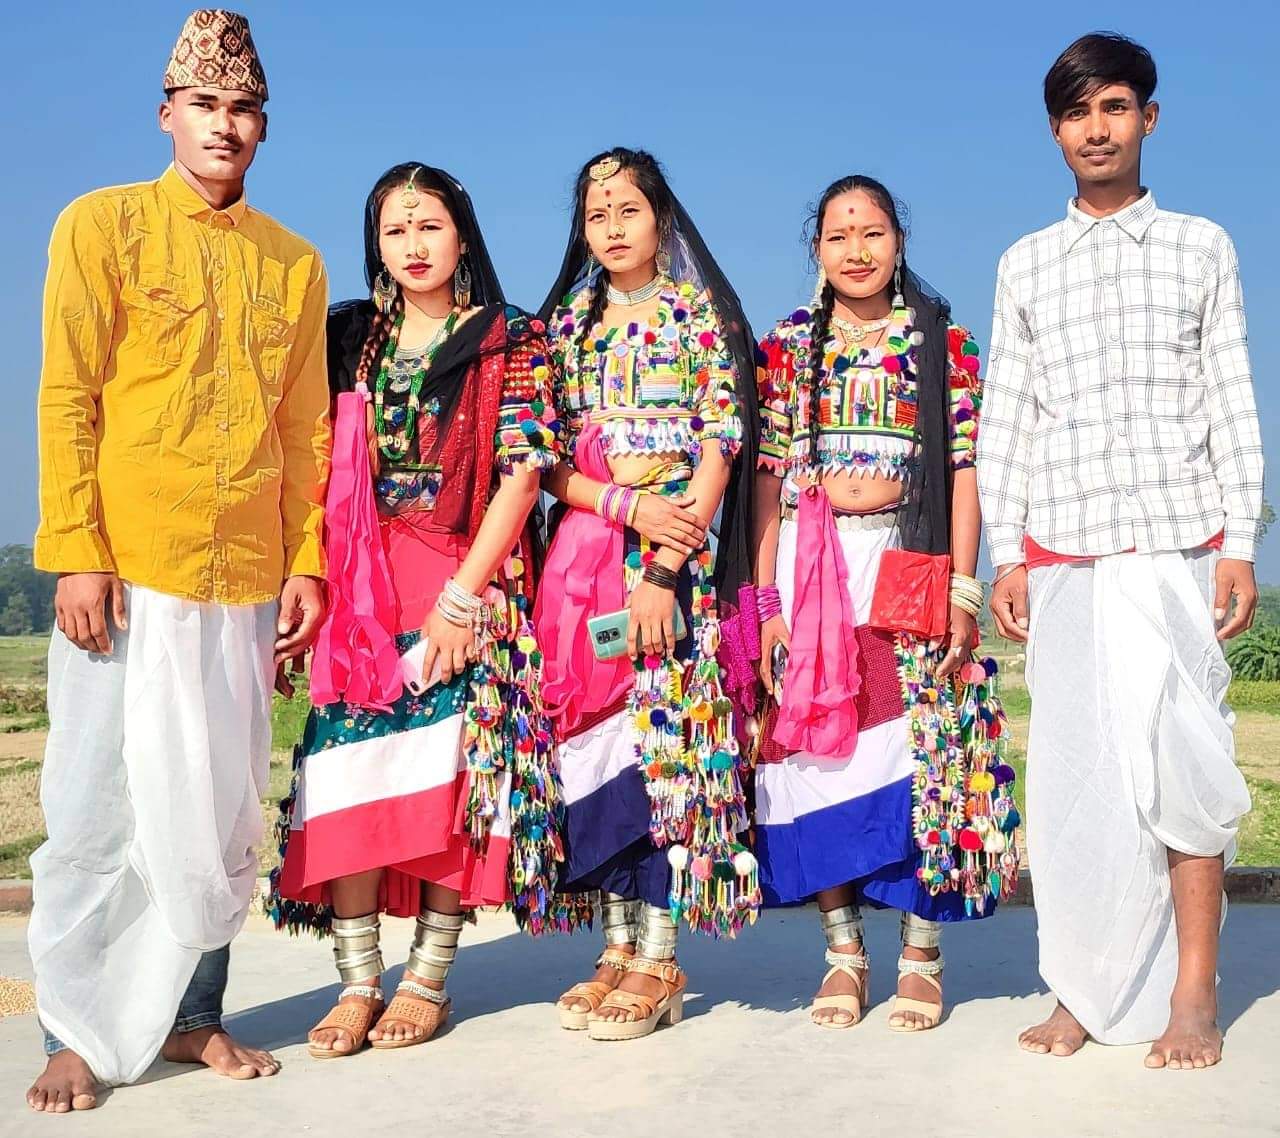 दिबारी विशेष संस्कृति कार्यक्रम धनगढी १५ उर्मा गाँवमे २०७९ कातिक ७ गते संझाके ७ः०० बजेसे